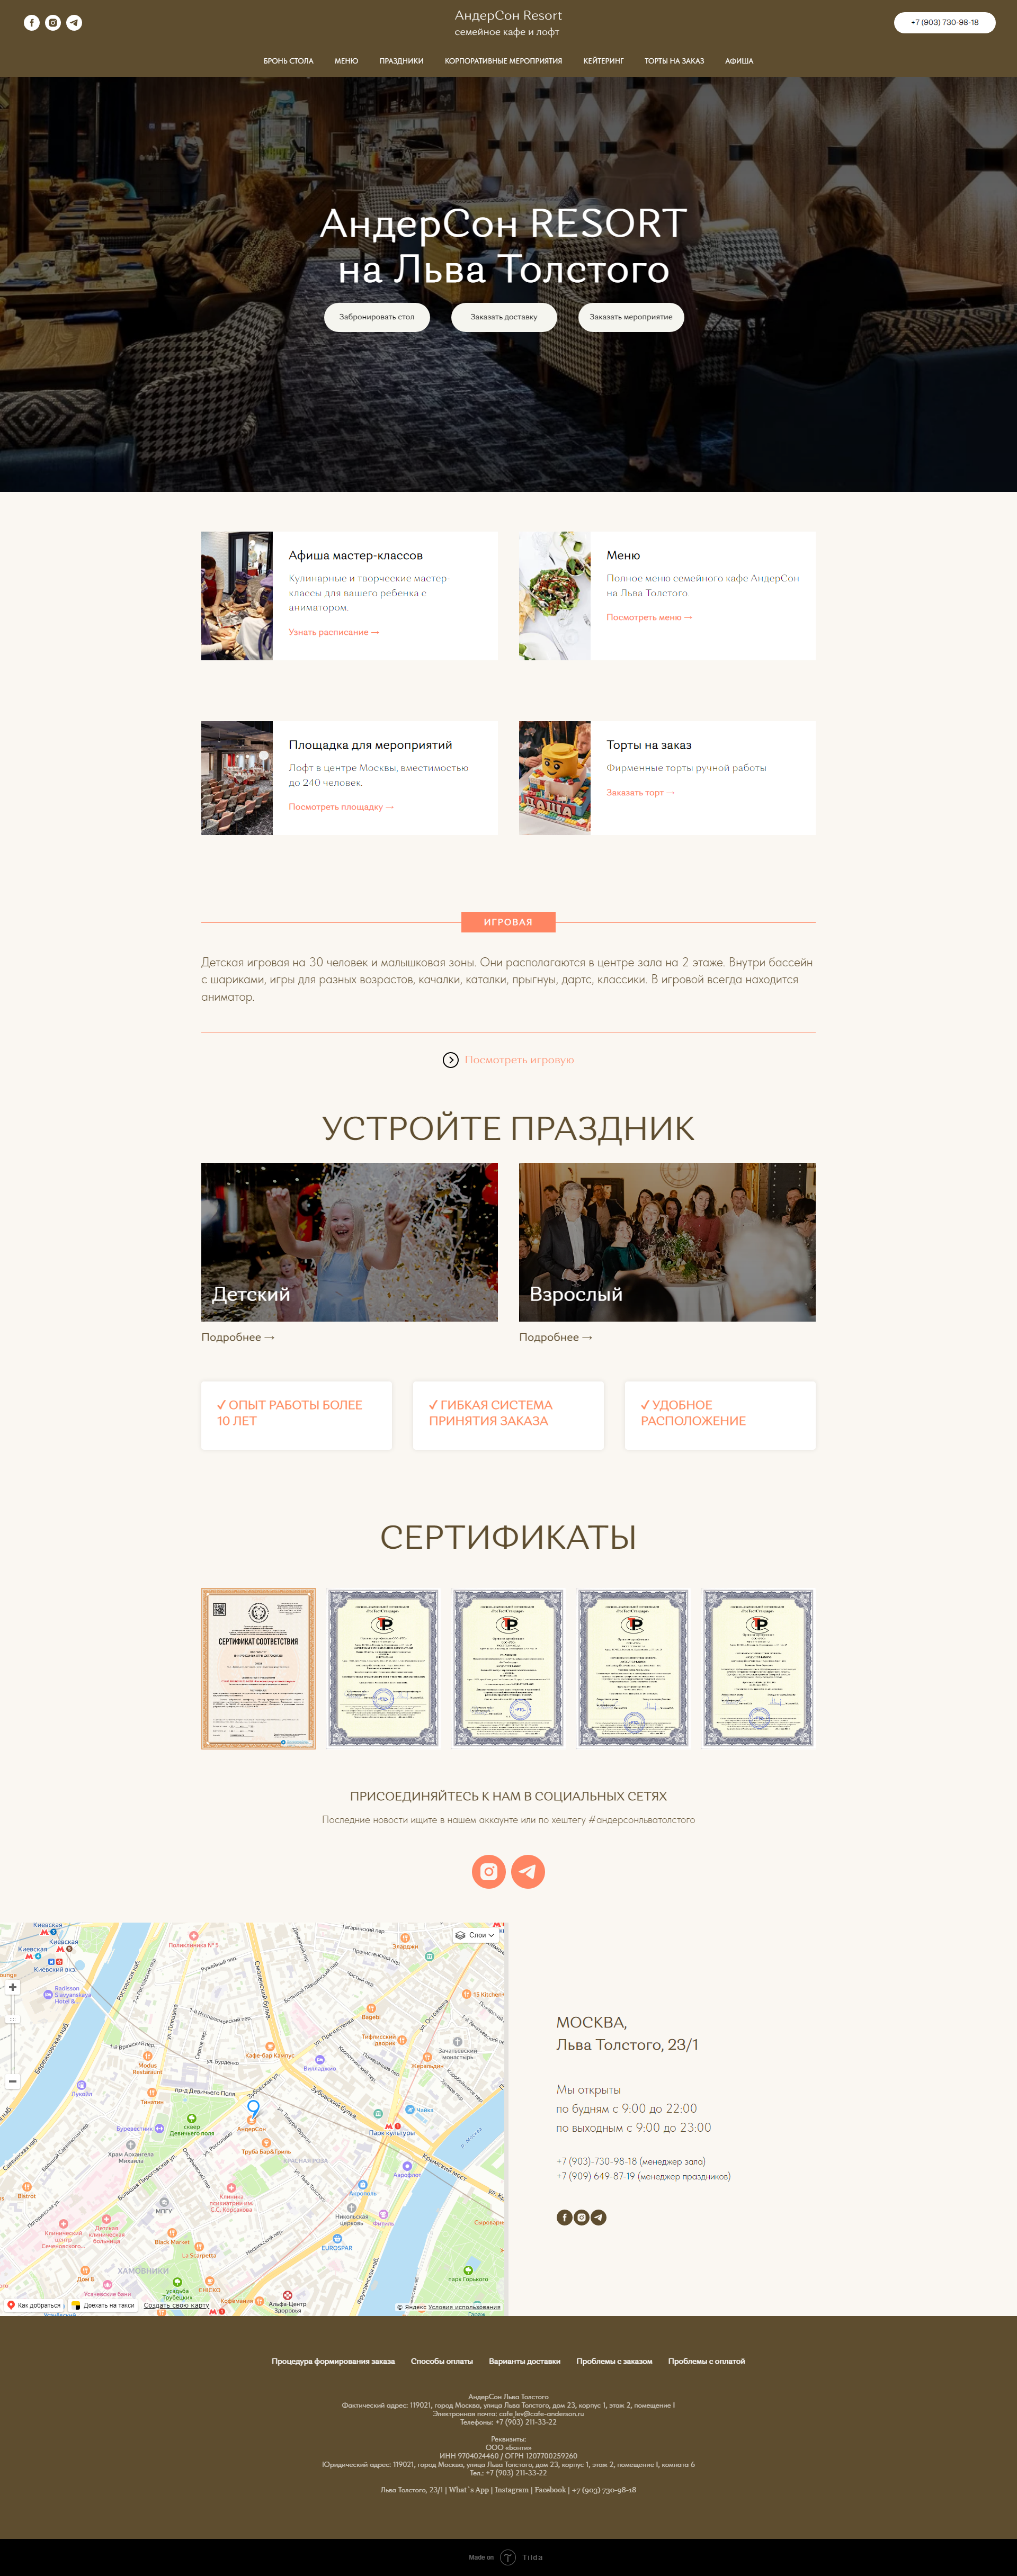 Пример andersonresort.ru сайта из рекламной выдачи